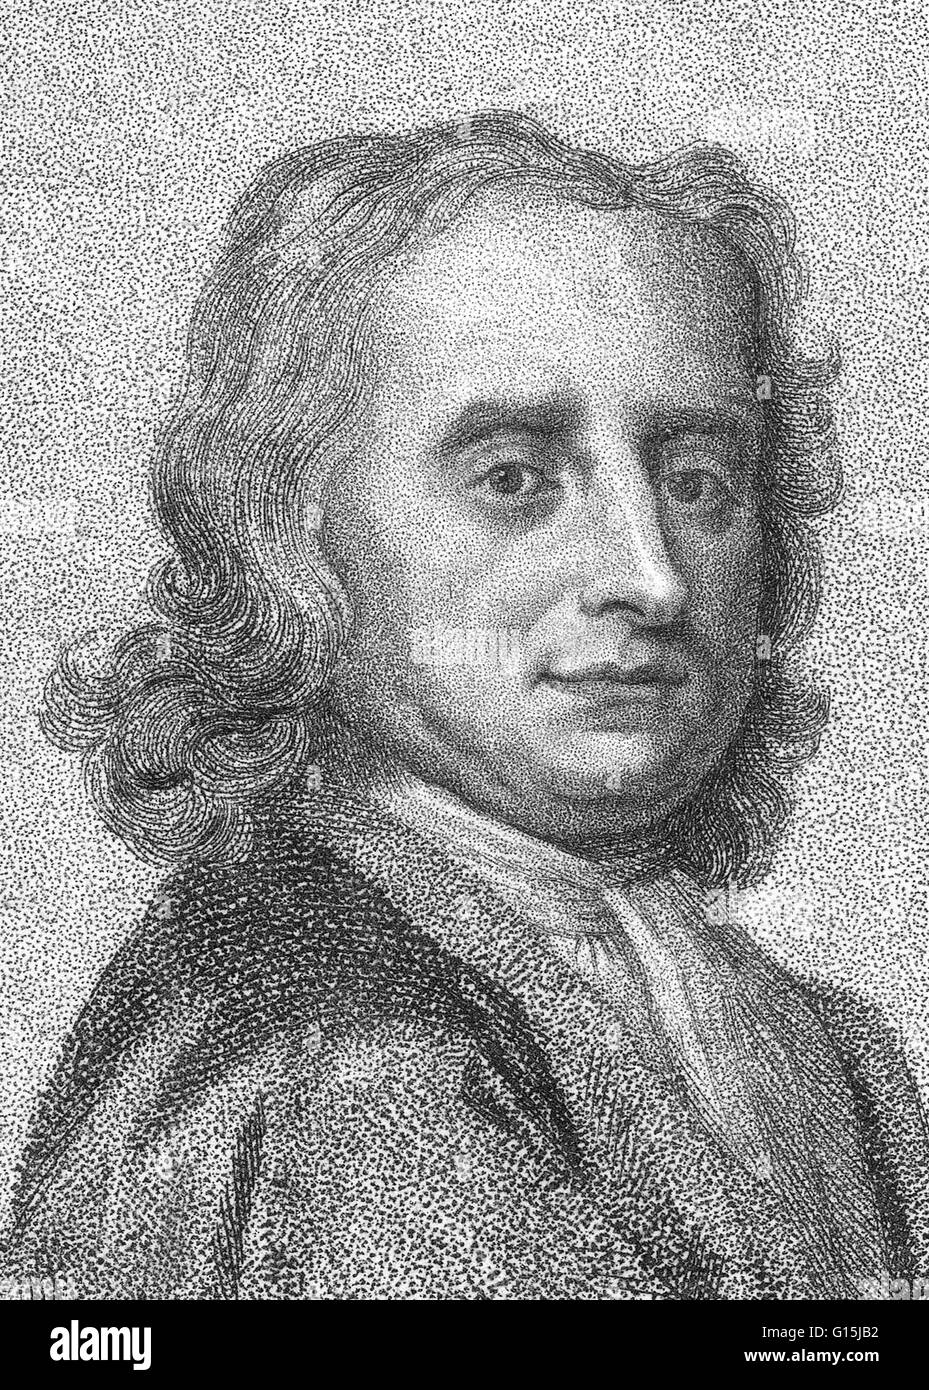 Isaac Newton (25 dicembre 1642 - 20 Marzo 1727) era un fisico inglese, matematico, astronomo, filosofo naturale, alchimista e teologo. La sua monografia Philosophae Naturalis Principia Mathematica, pubblicato nel 1687, getta le basi per m Foto Stock